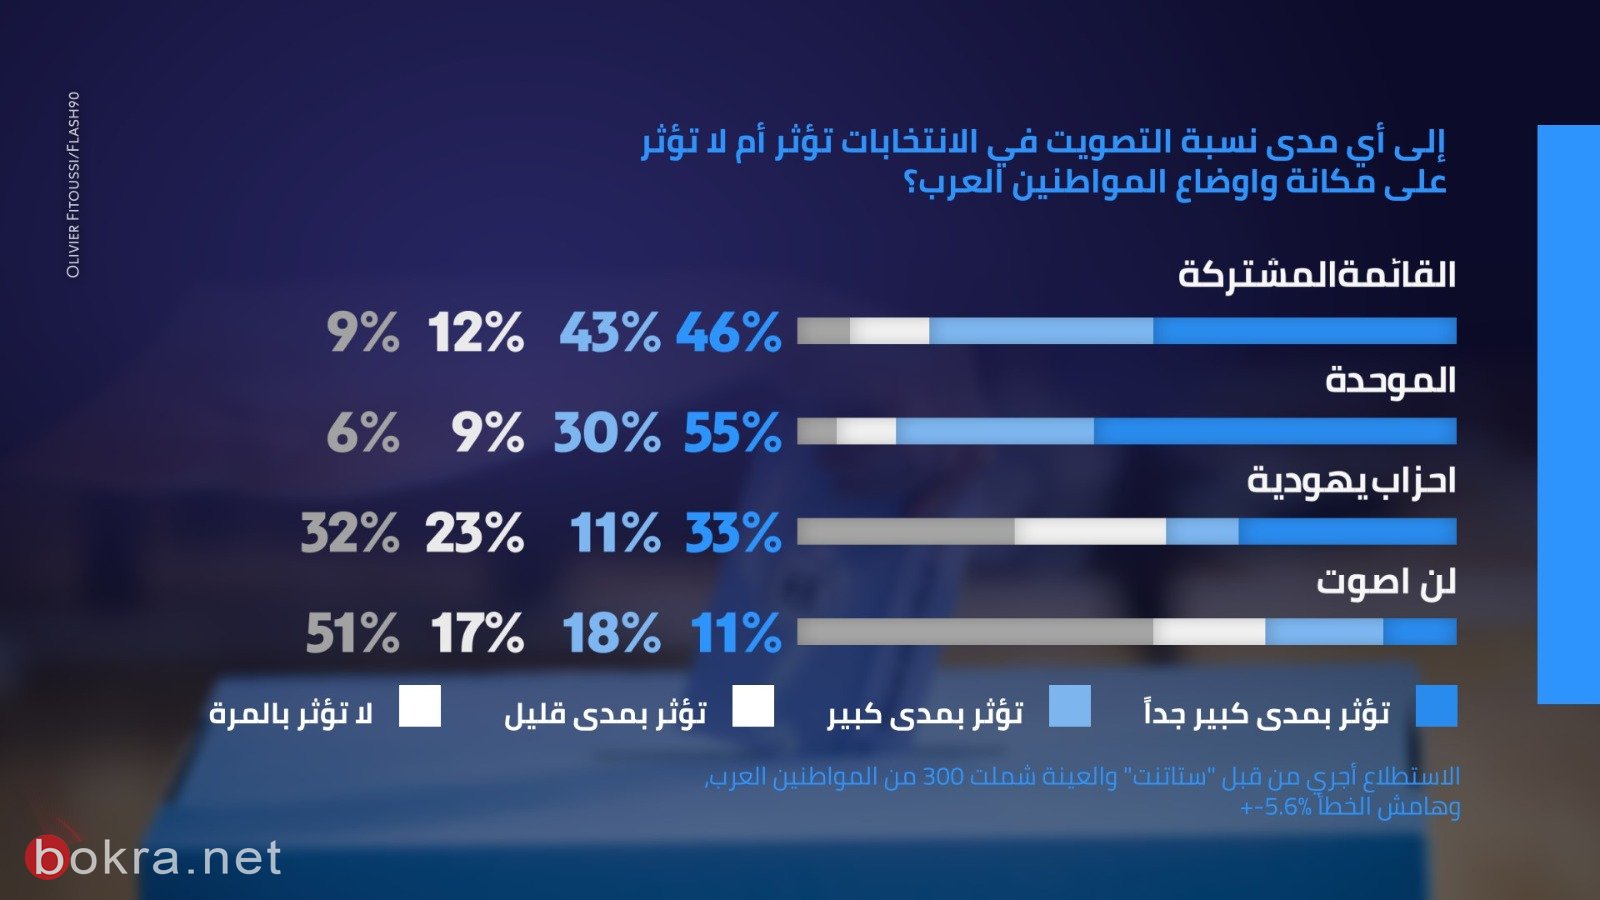 65% من العرب يؤيدون دخول الاحزاب العربية الى الائتلاف الحكومي-7